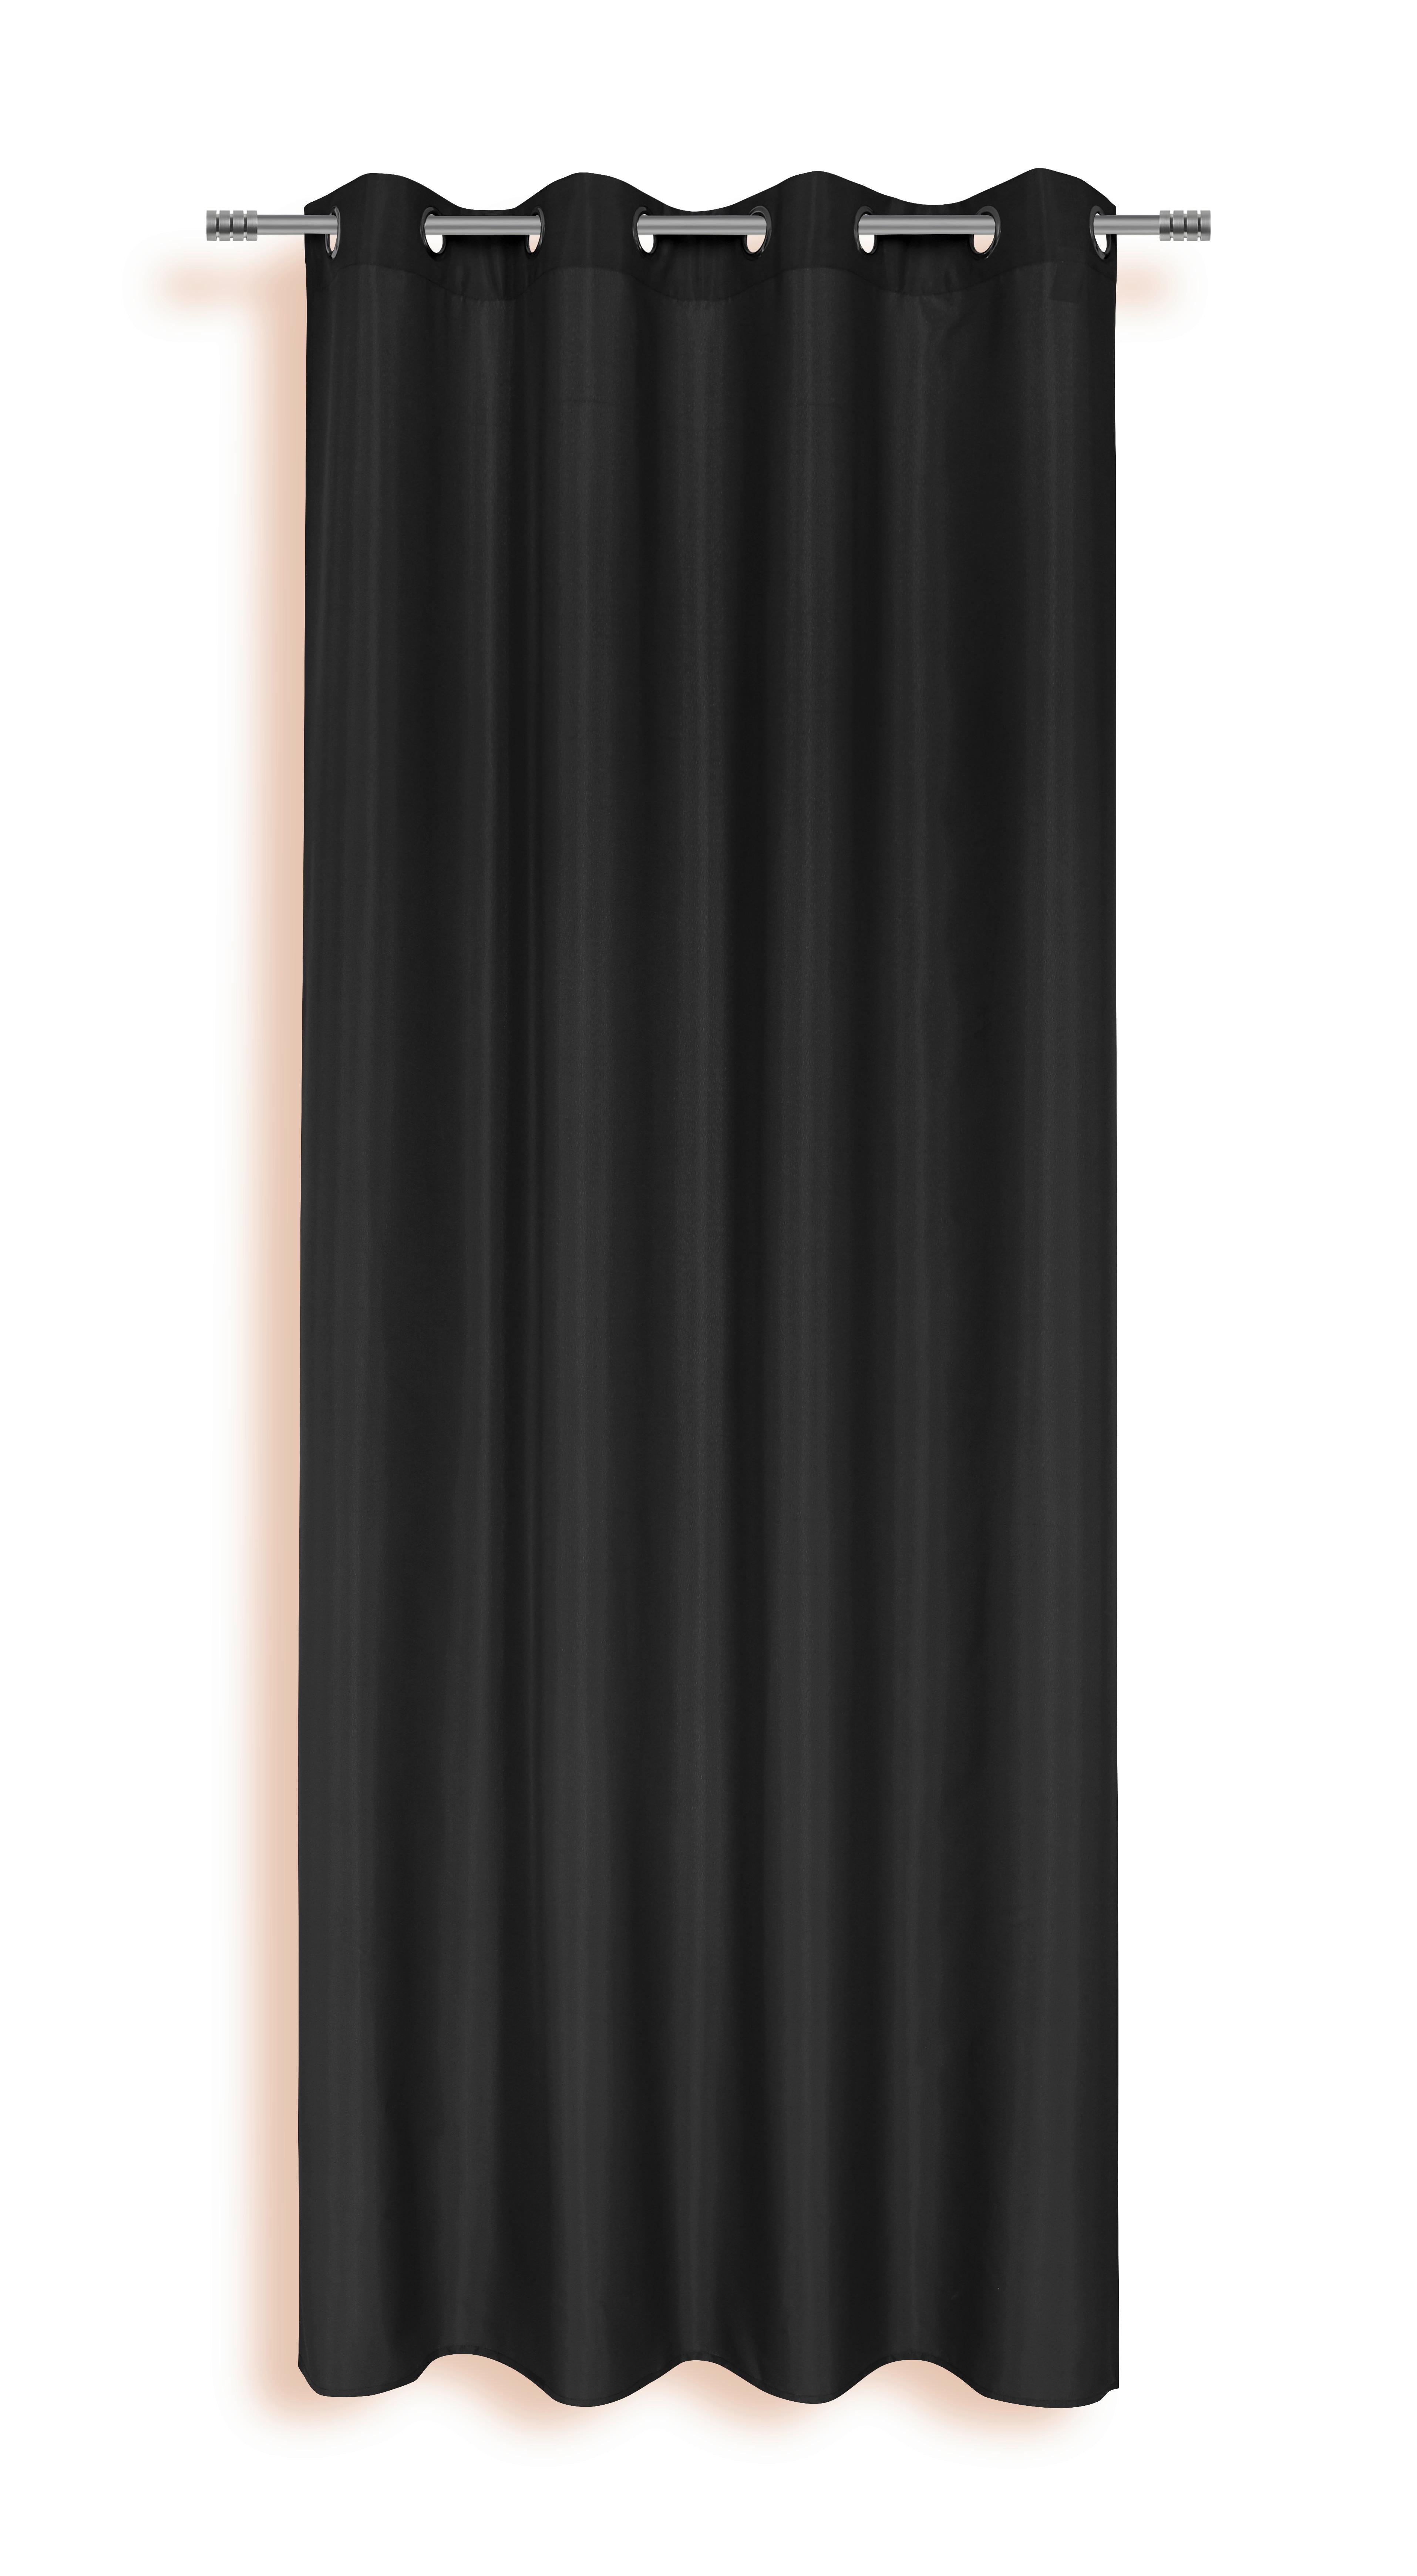 Készfüggöny Isolde - Fekete, konvencionális, Textil (140/245cm) - Ondega